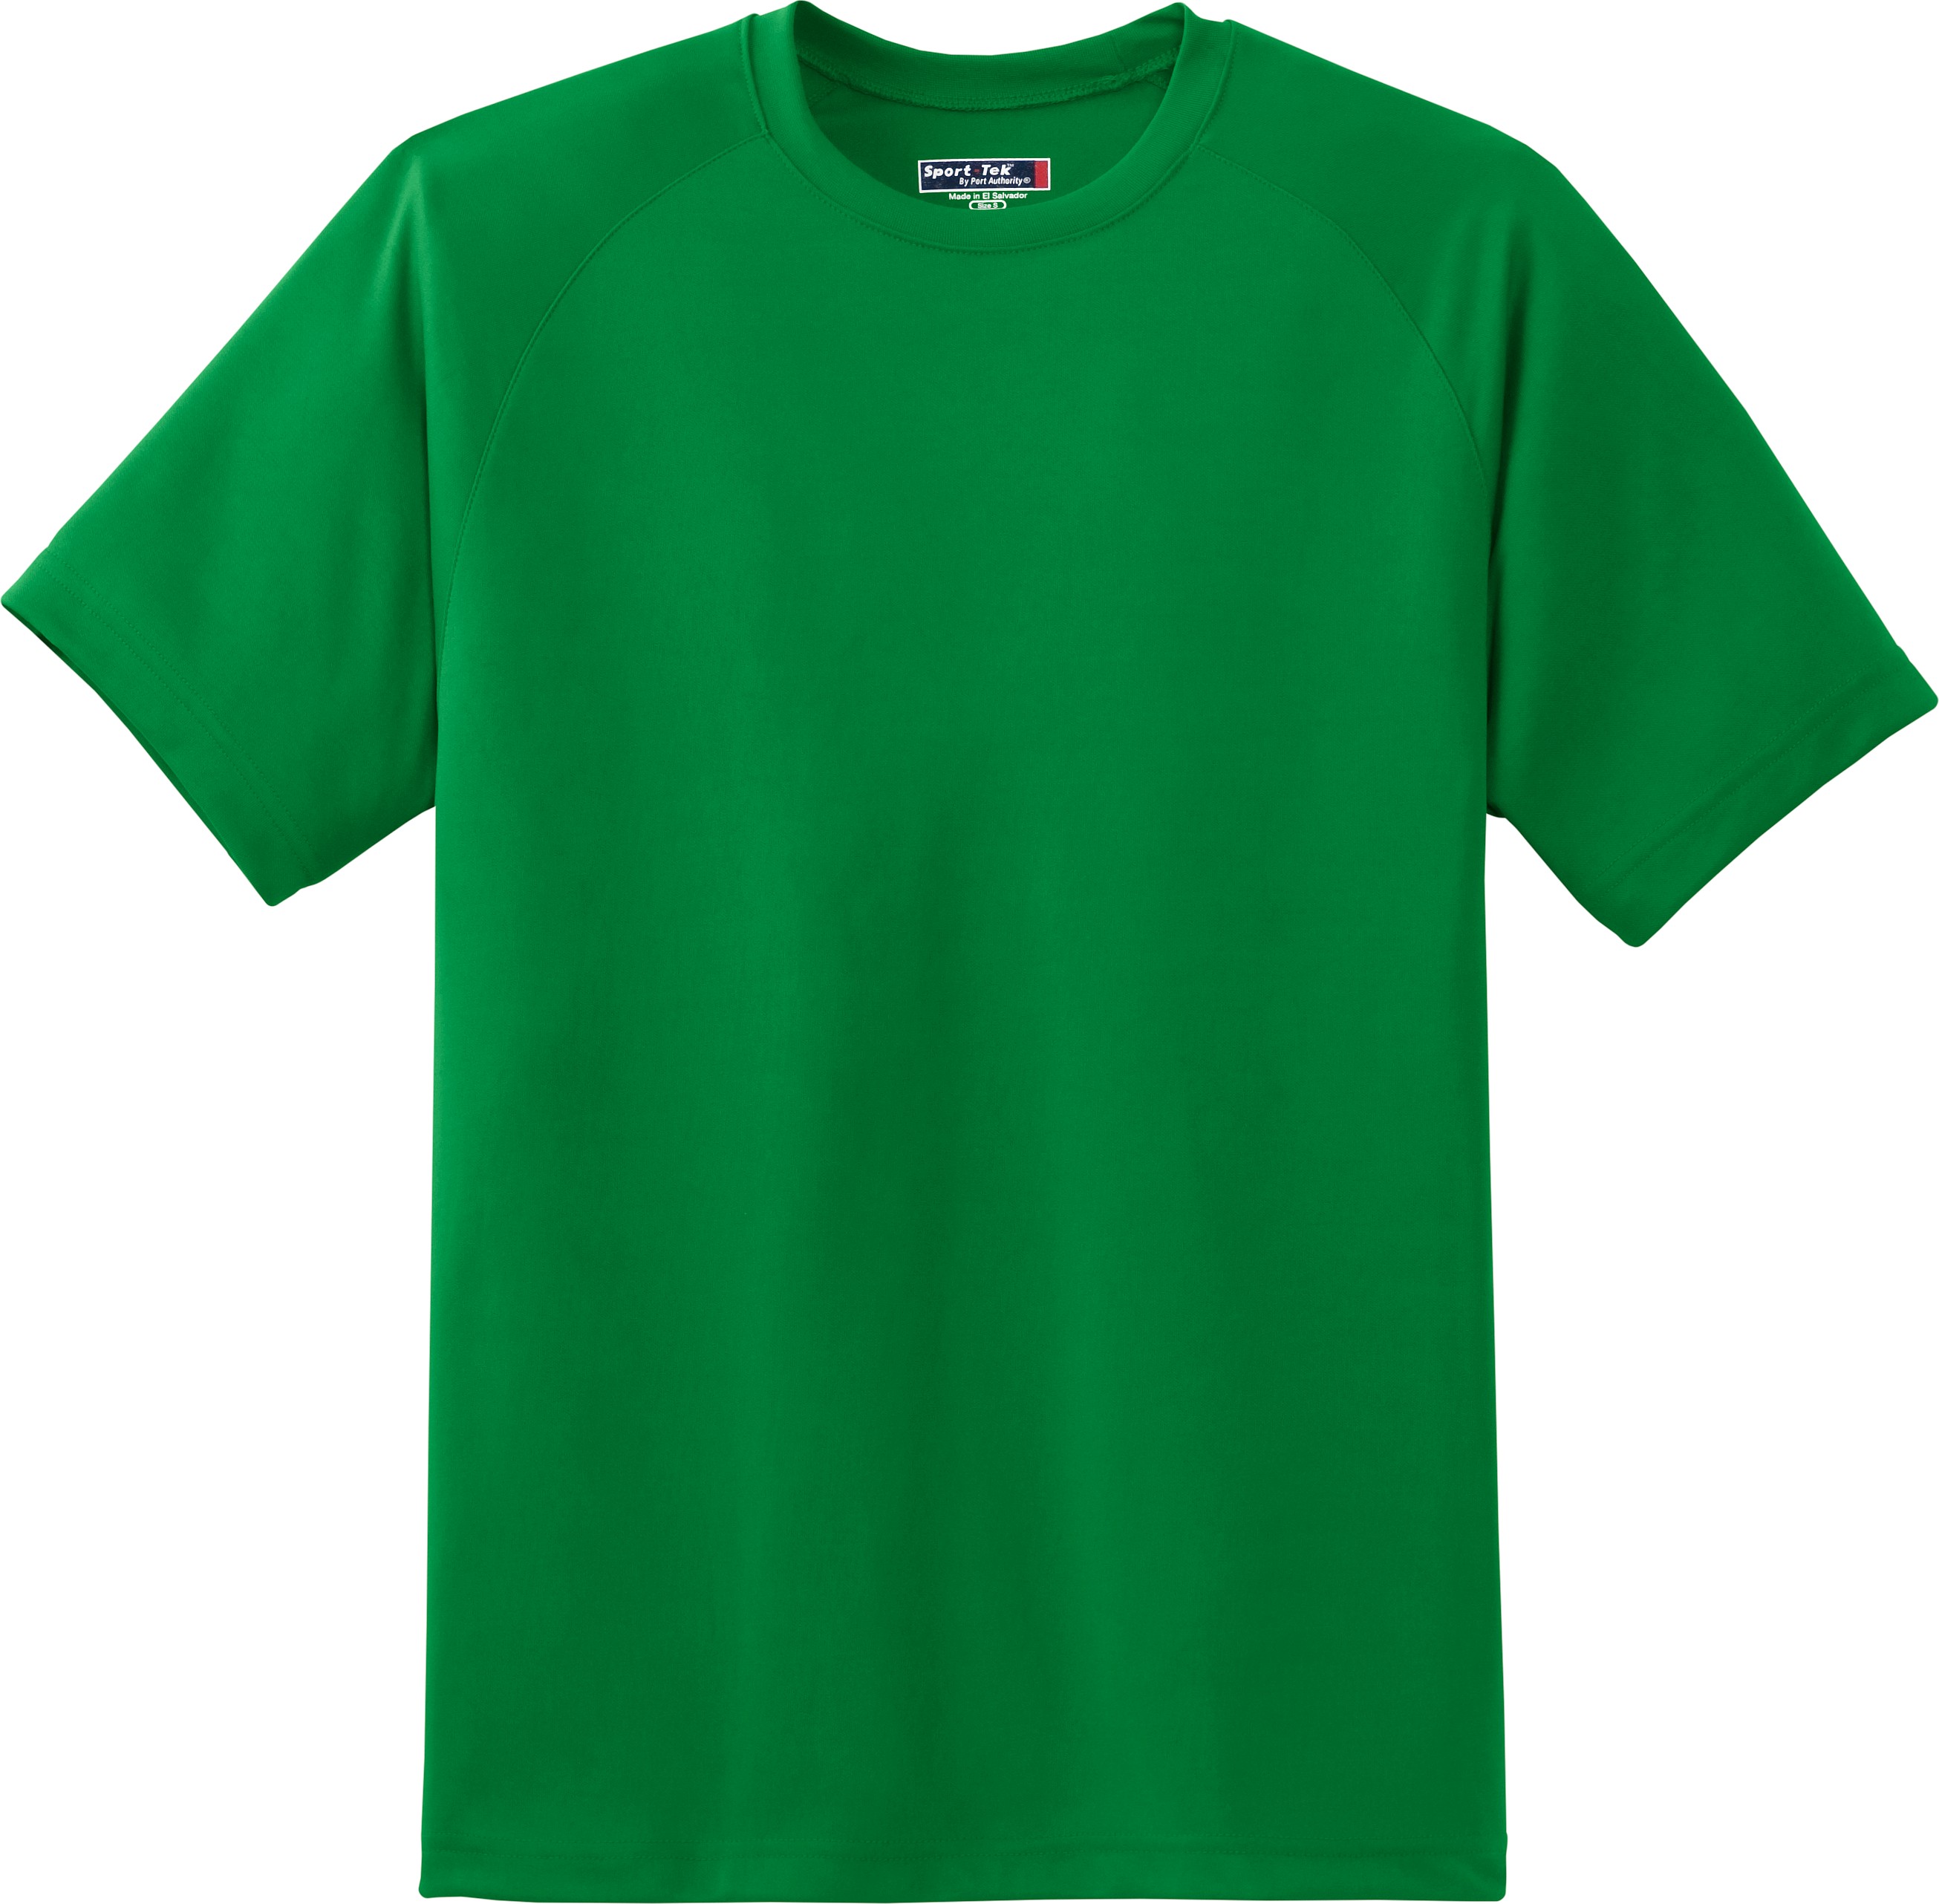 T-shirt-green - inikweb.com